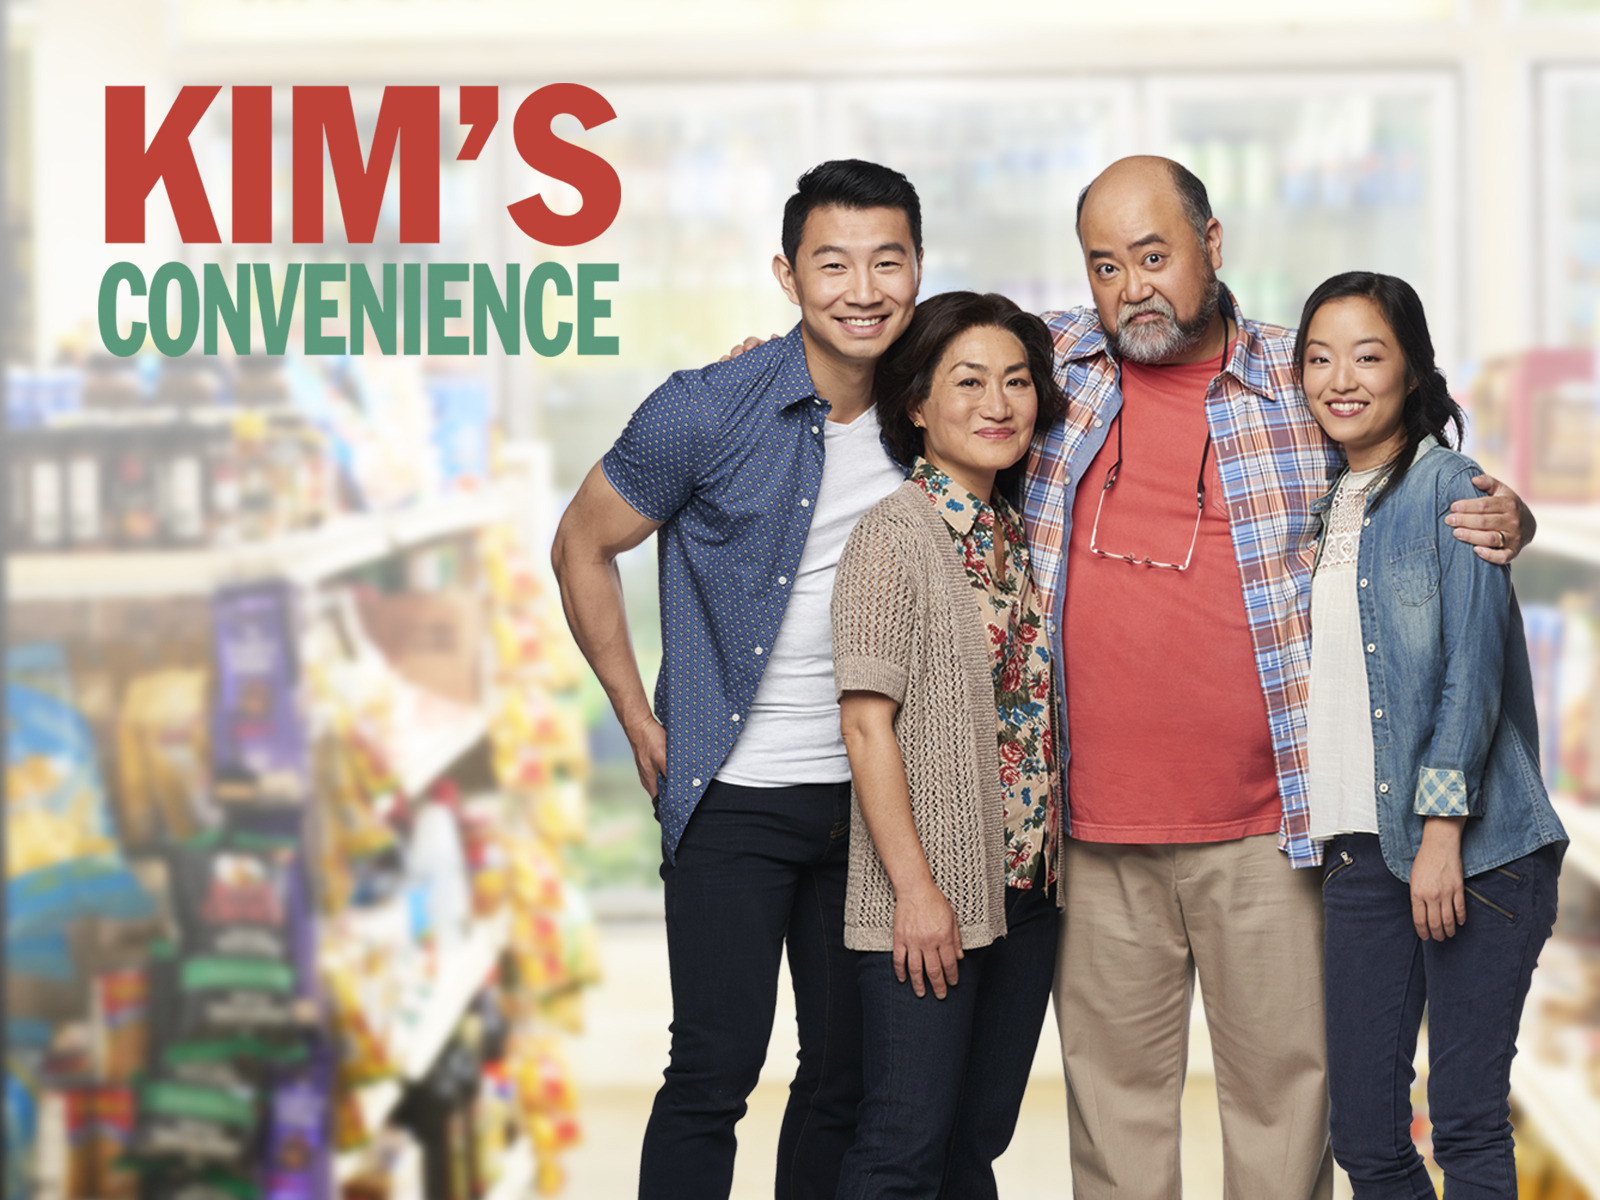 Kim s Convenience Season 1 มินิมาร์ท ไม่ขาดรัก ปี 1